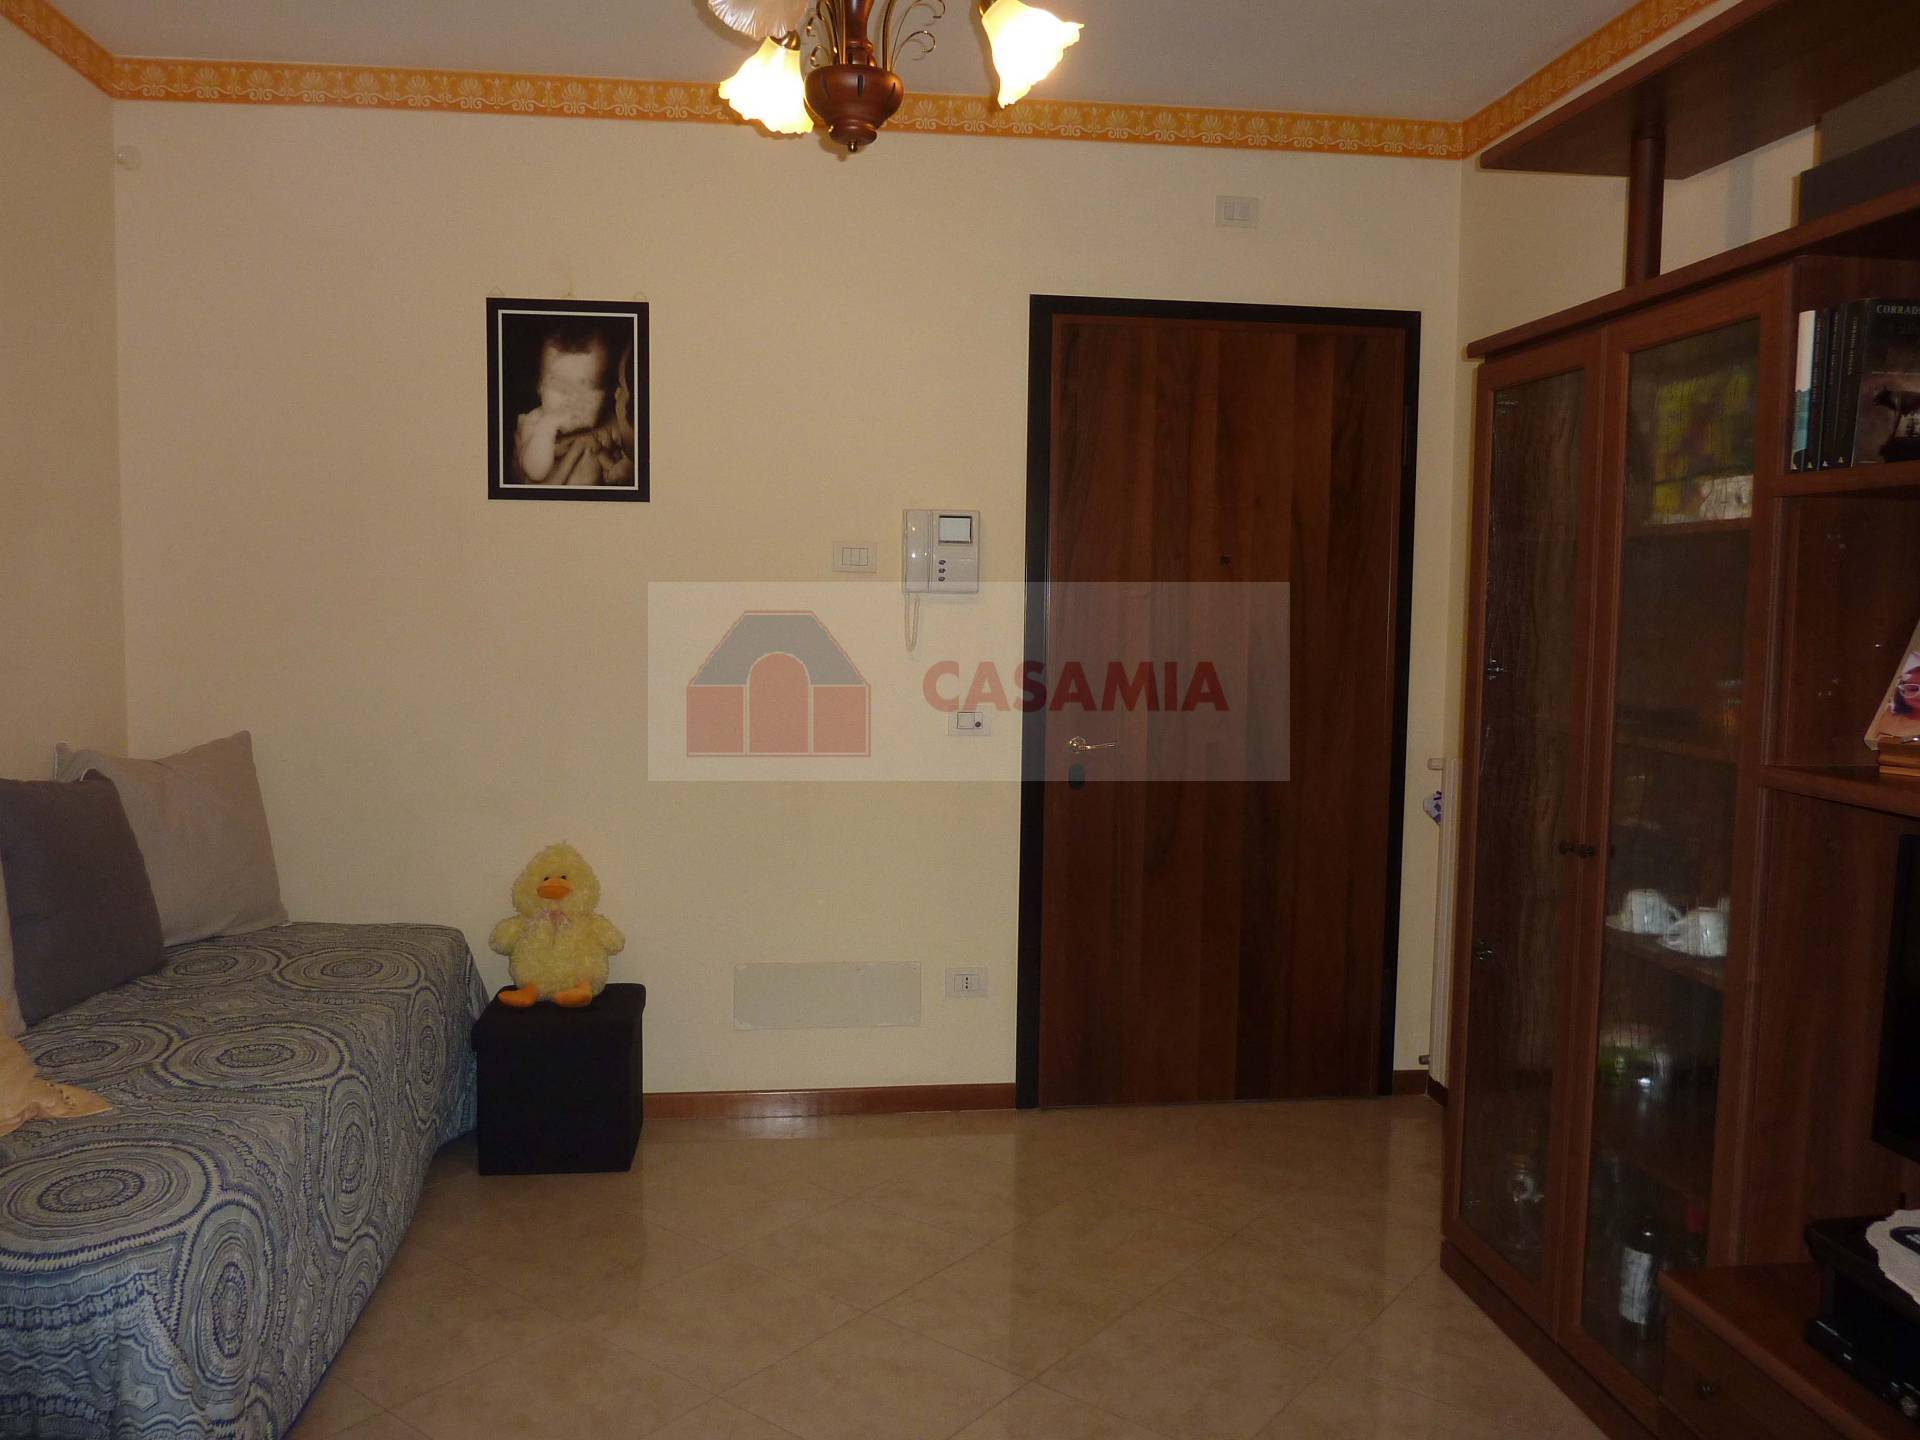 Appartamento in vendita a Chiarano, 2 locali, zona Località: FossaltaMaggiore, prezzo € 84.000 | PortaleAgenzieImmobiliari.it